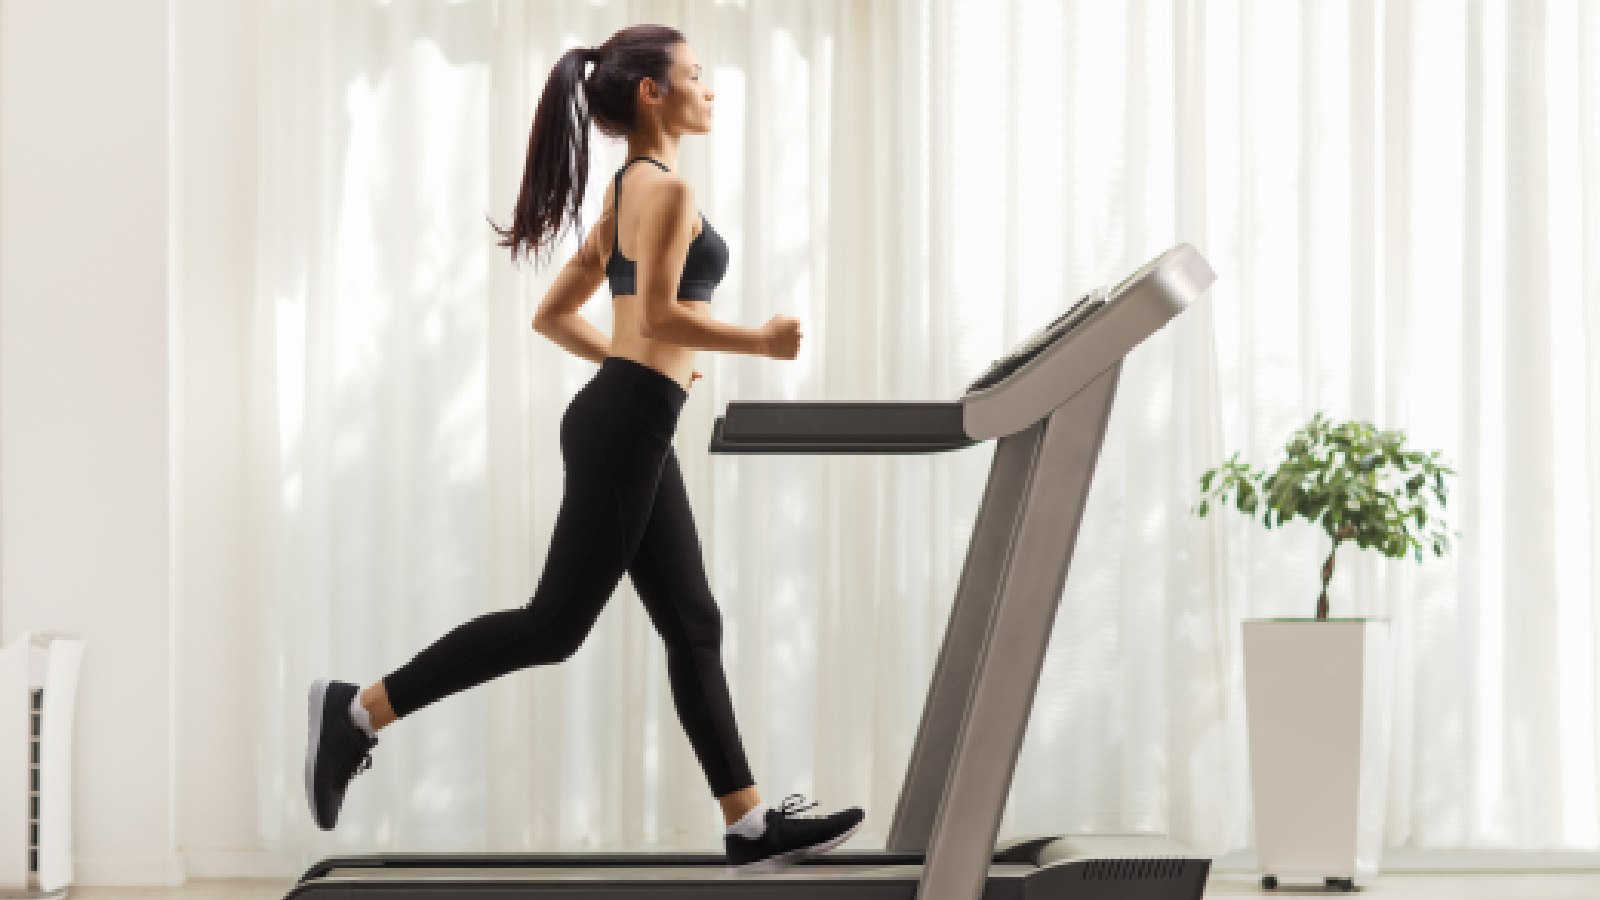 ऑउटसाइड या ट्रेडमिल, वजन घटाने के लिए कहां पर दौड़ना है ज्यादा बेहतर, एक फिटनेस एक्सपर्ट से जानते हैं